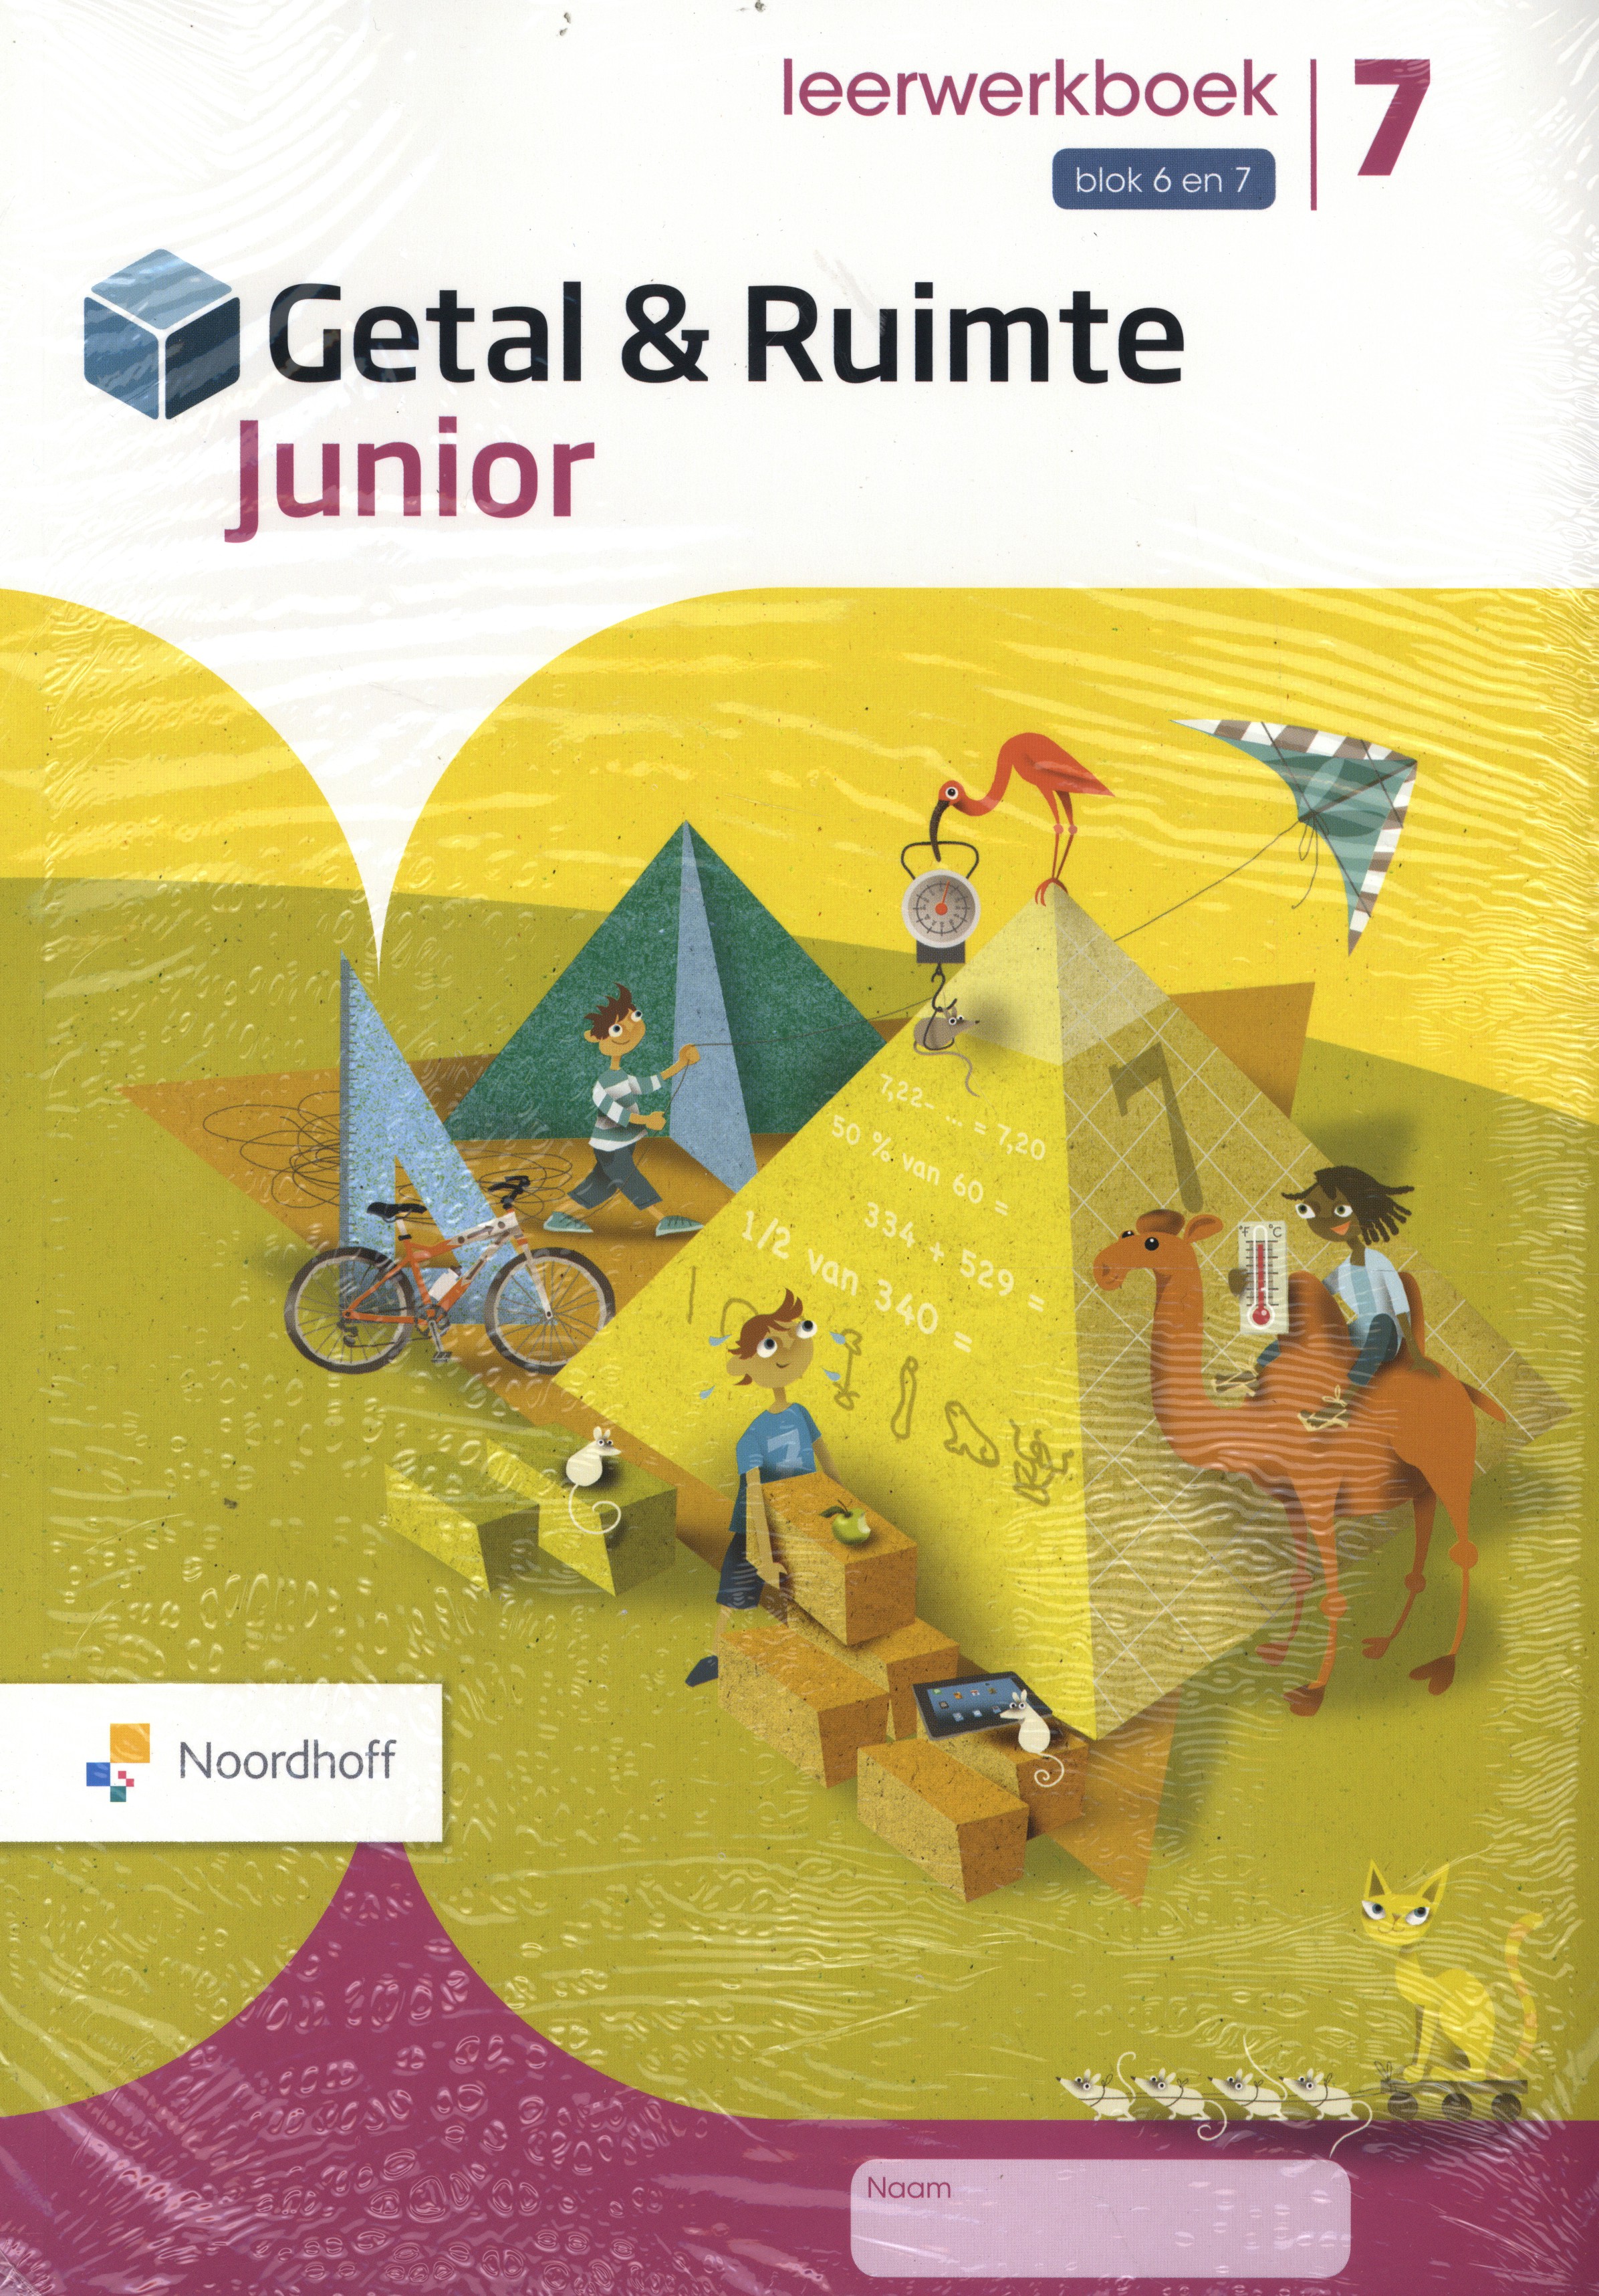 Getal & Ruimte Junior leerwerkboek groep 7 blok 6 en 7_set a 5